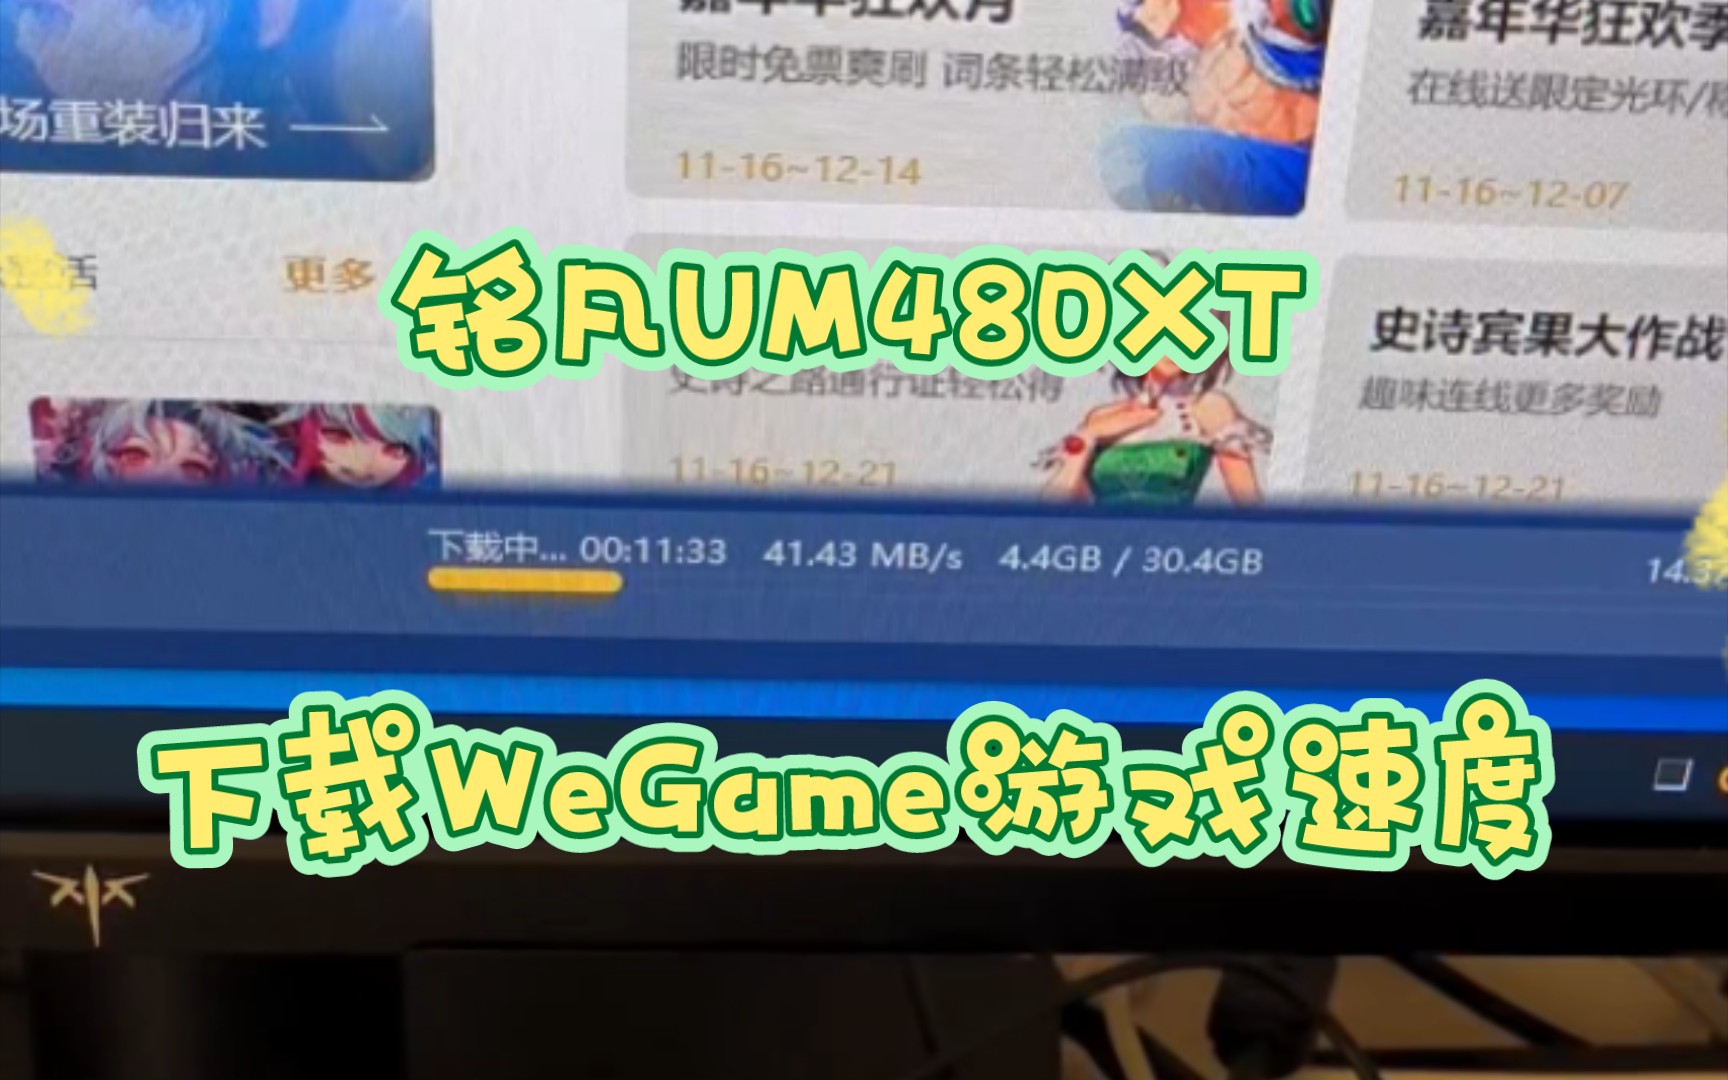 铭凡UM480XT，WeGame下载速度实测